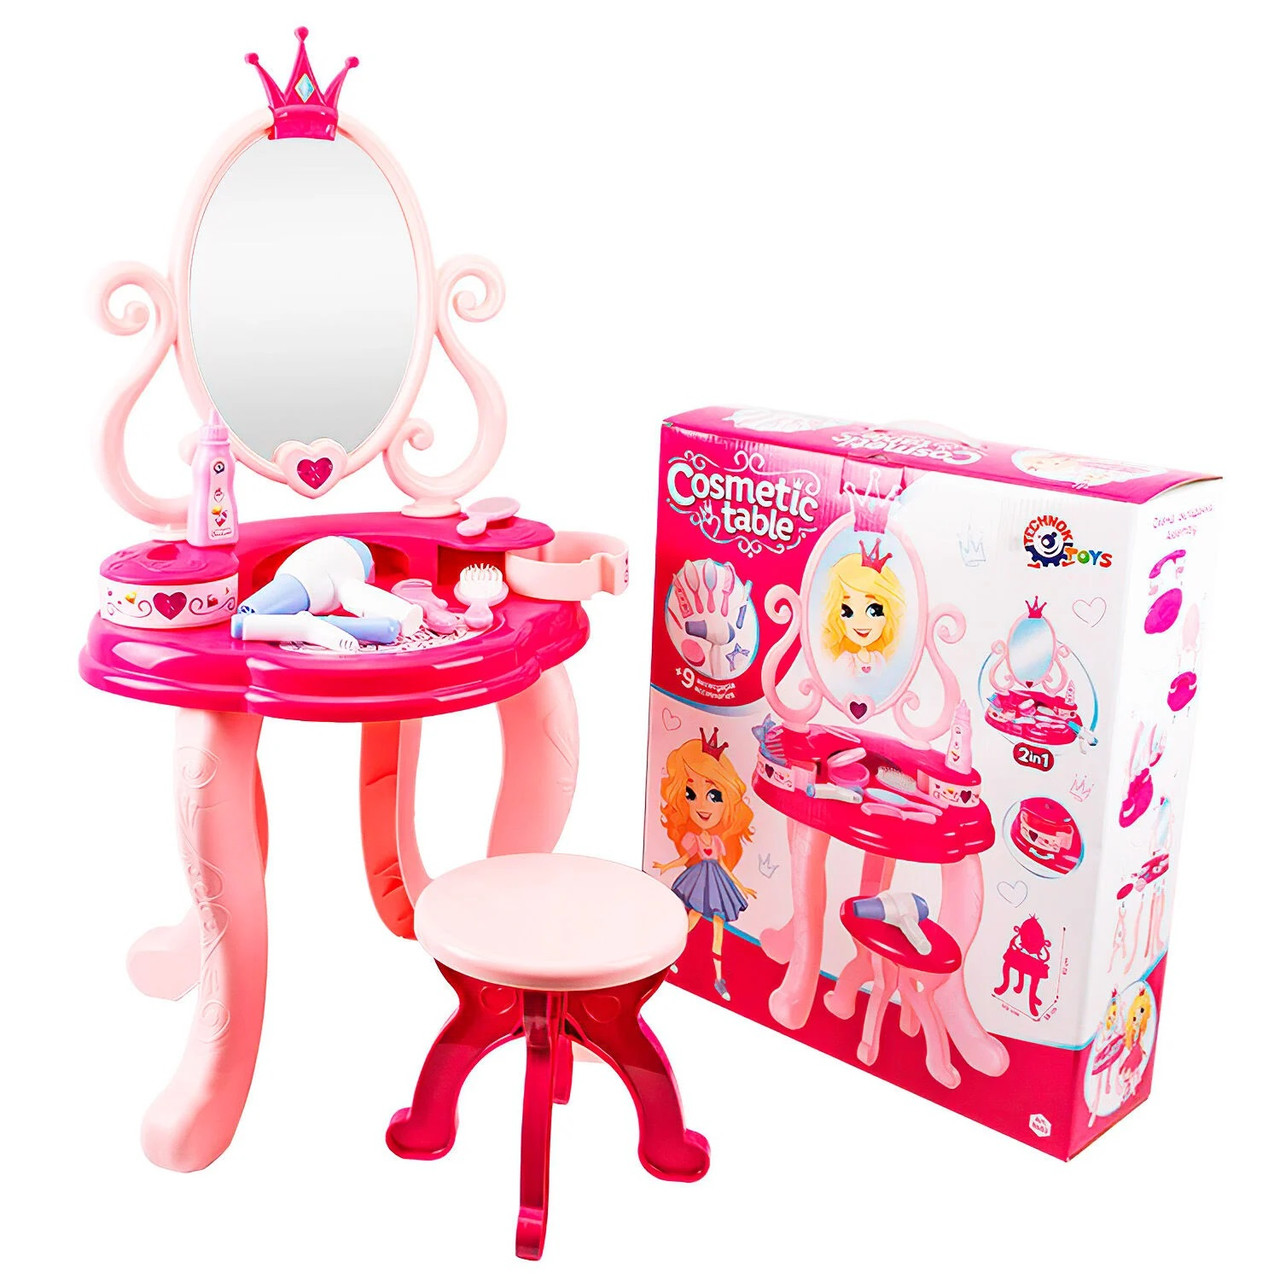 Дитячий туалетний столик 8683 "Technok Toys", трюмо для дівчаток